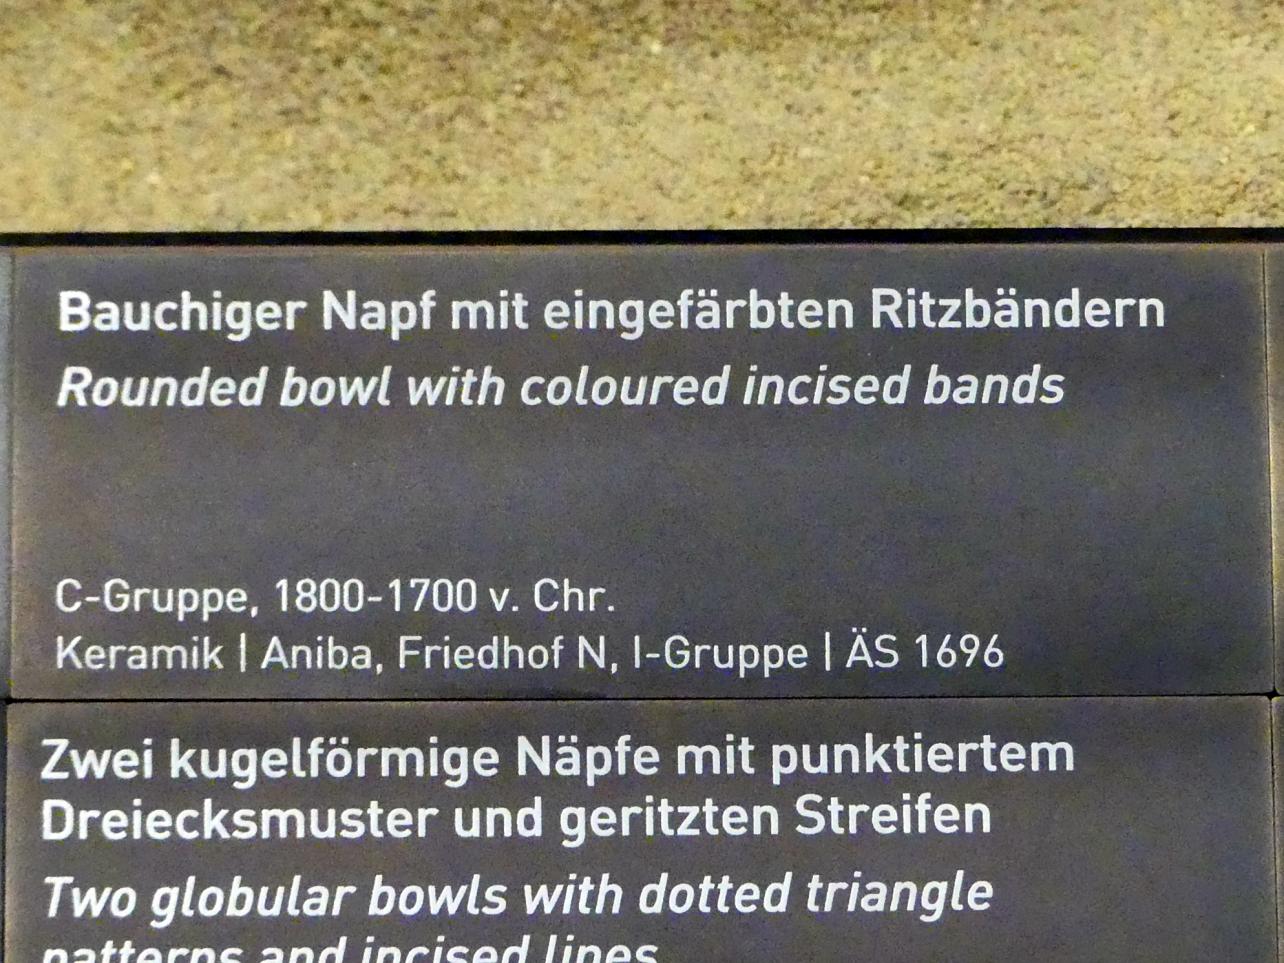 Bauchiger Napf mit eingefärbten Ritzbändern, C-Gruppe, 1900 - 1550 v. Chr., 1800 - 1700 v. Chr., Bild 2/2